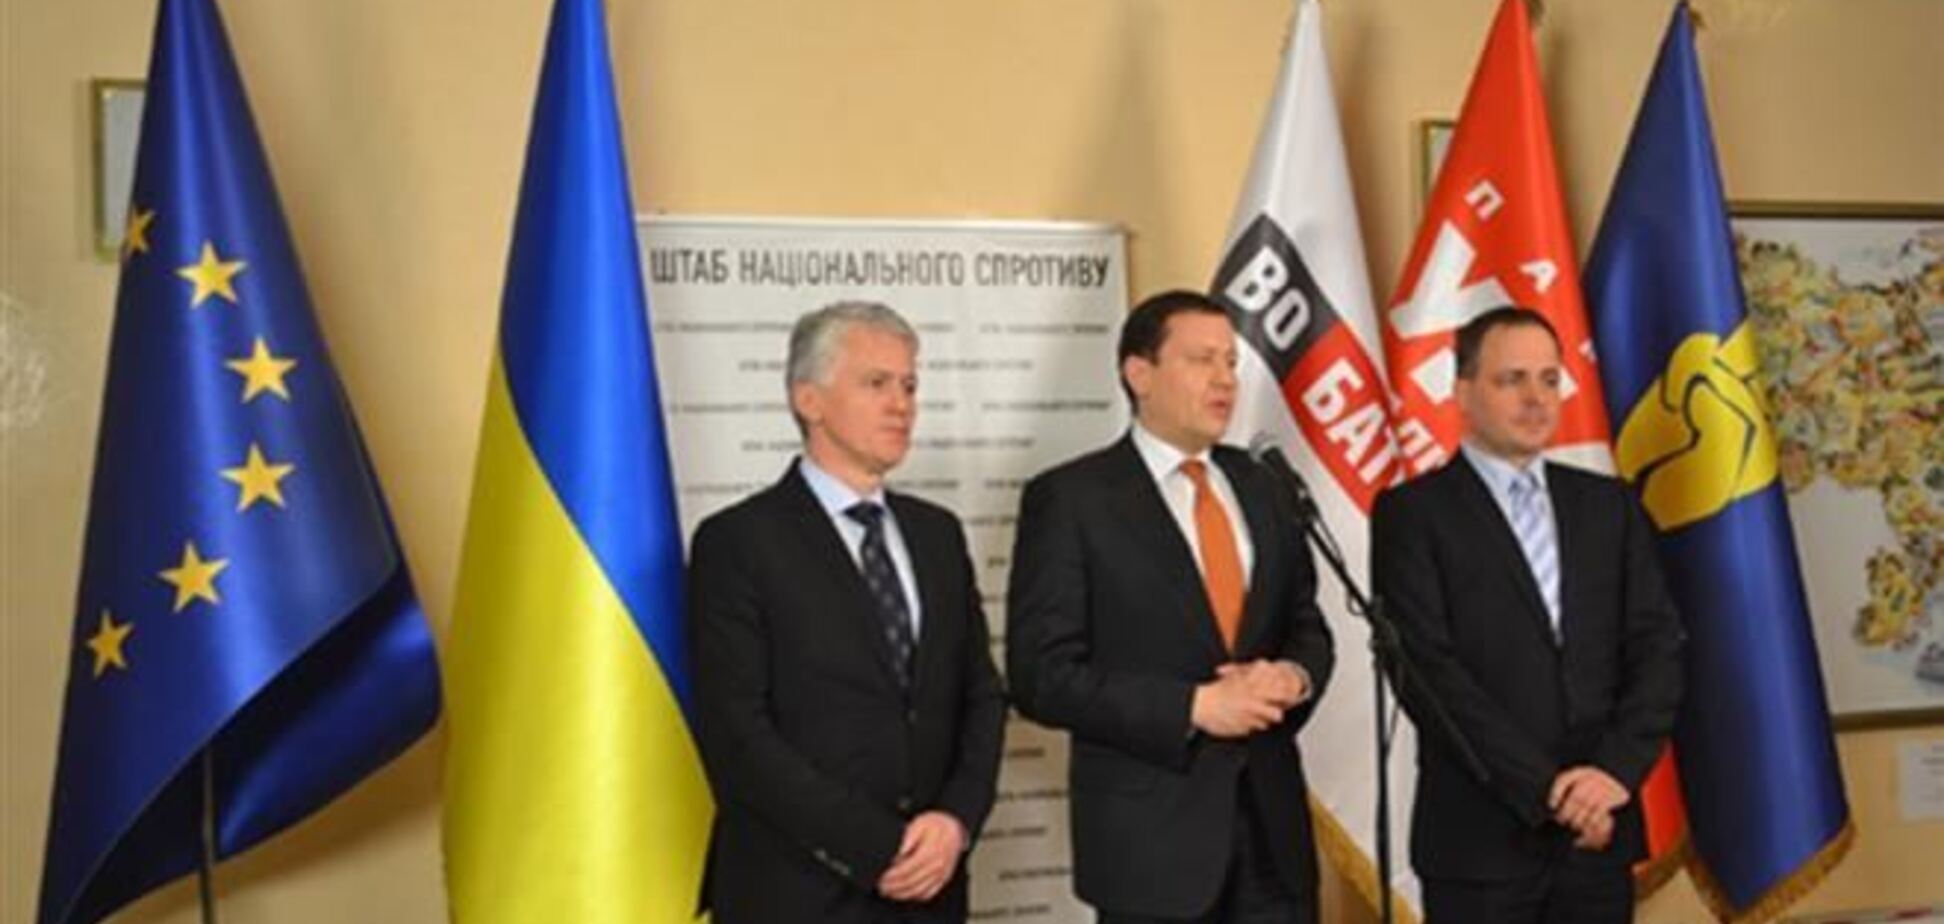 Словацькі депутати виступили на Евромайдане